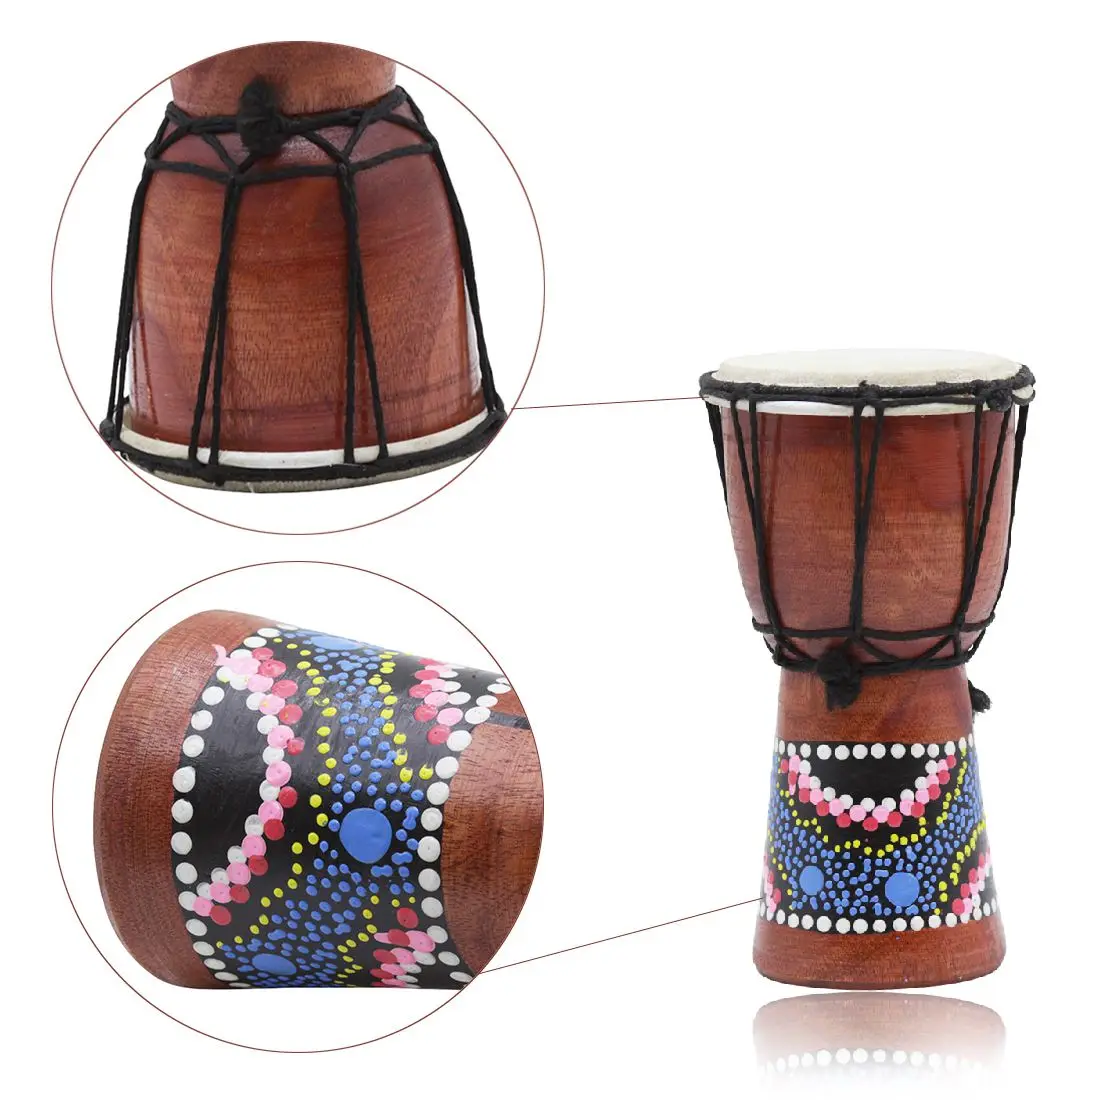 4 дюйма Африканский барабан Ударные малыш игрушки классические расписные деревянные африканские Стиль ручной барабан для детских игрушек